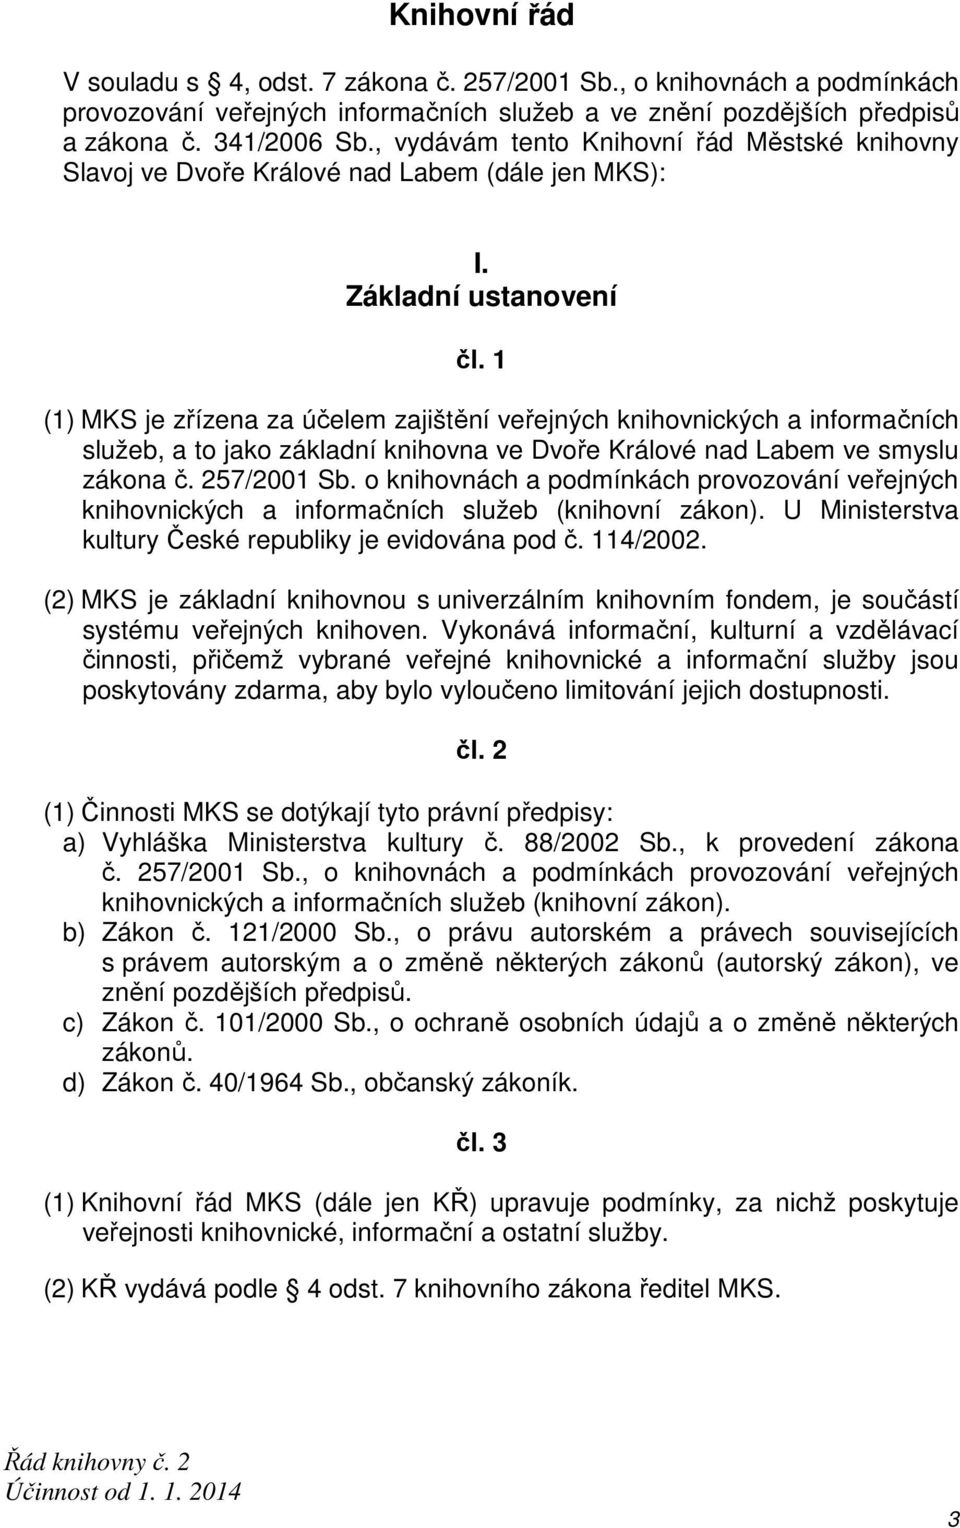 1 (1) MKS je zřízena za účelem zajištění veřejných knihovnických a informačních služeb, a to jako základní knihovna ve Dvoře Králové nad Labem ve smyslu zákona č. 257/2001 Sb.